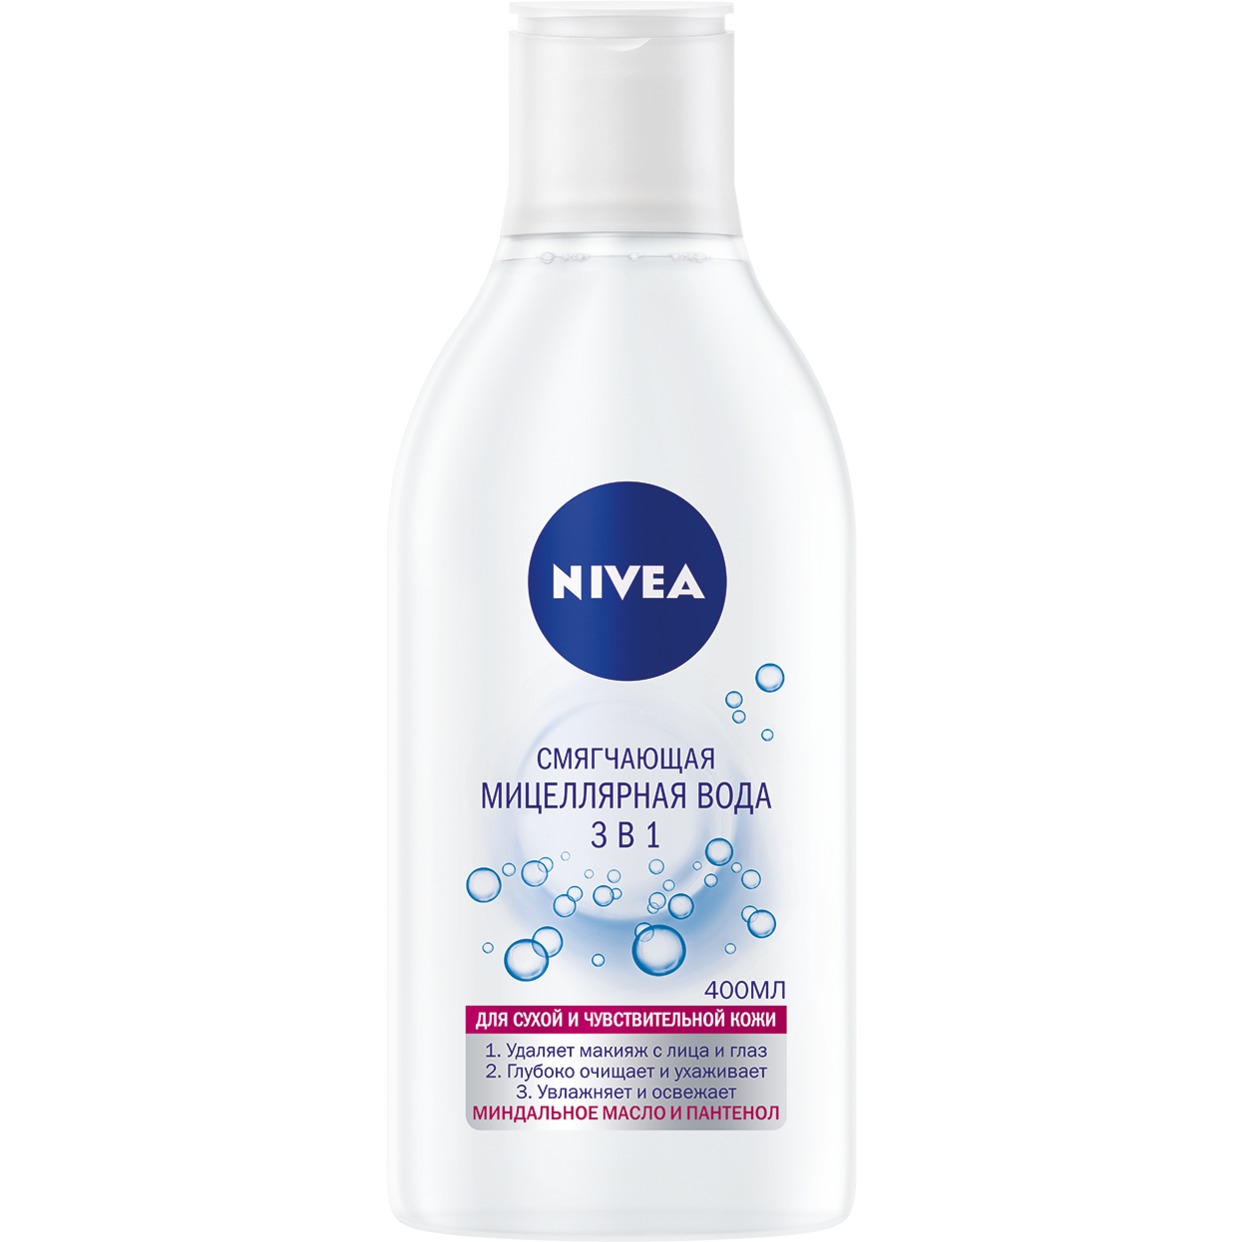 Мицеллярная вода Nivea Смягчающая 3в1 для сухой и чувствительной кожи 400 мл